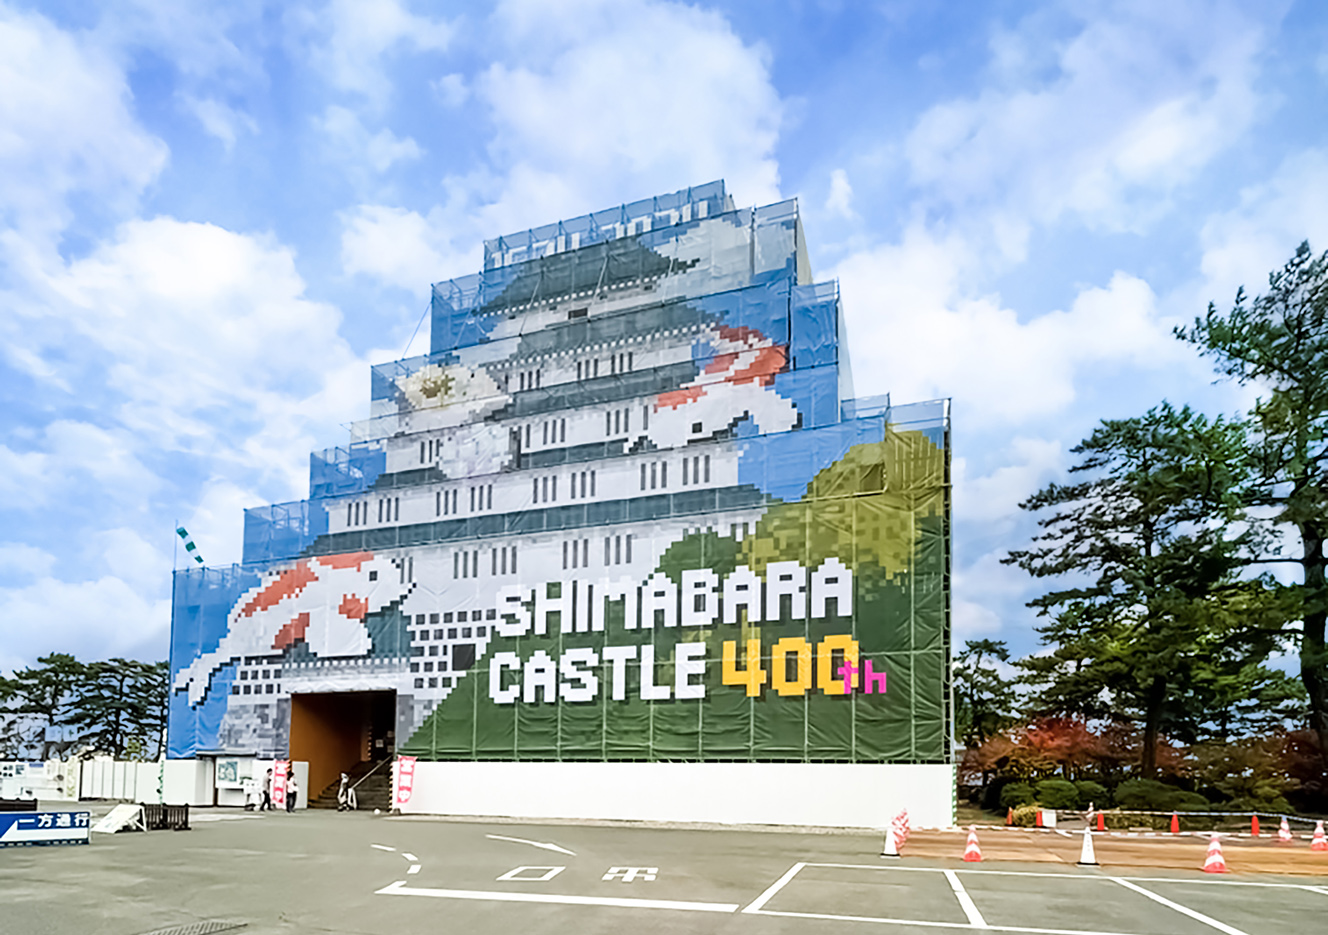 長崎県島原市城内にある島原城の改修工事九州産業大学造形短期大学部の学生がデザインした工事幕を飾った事例で